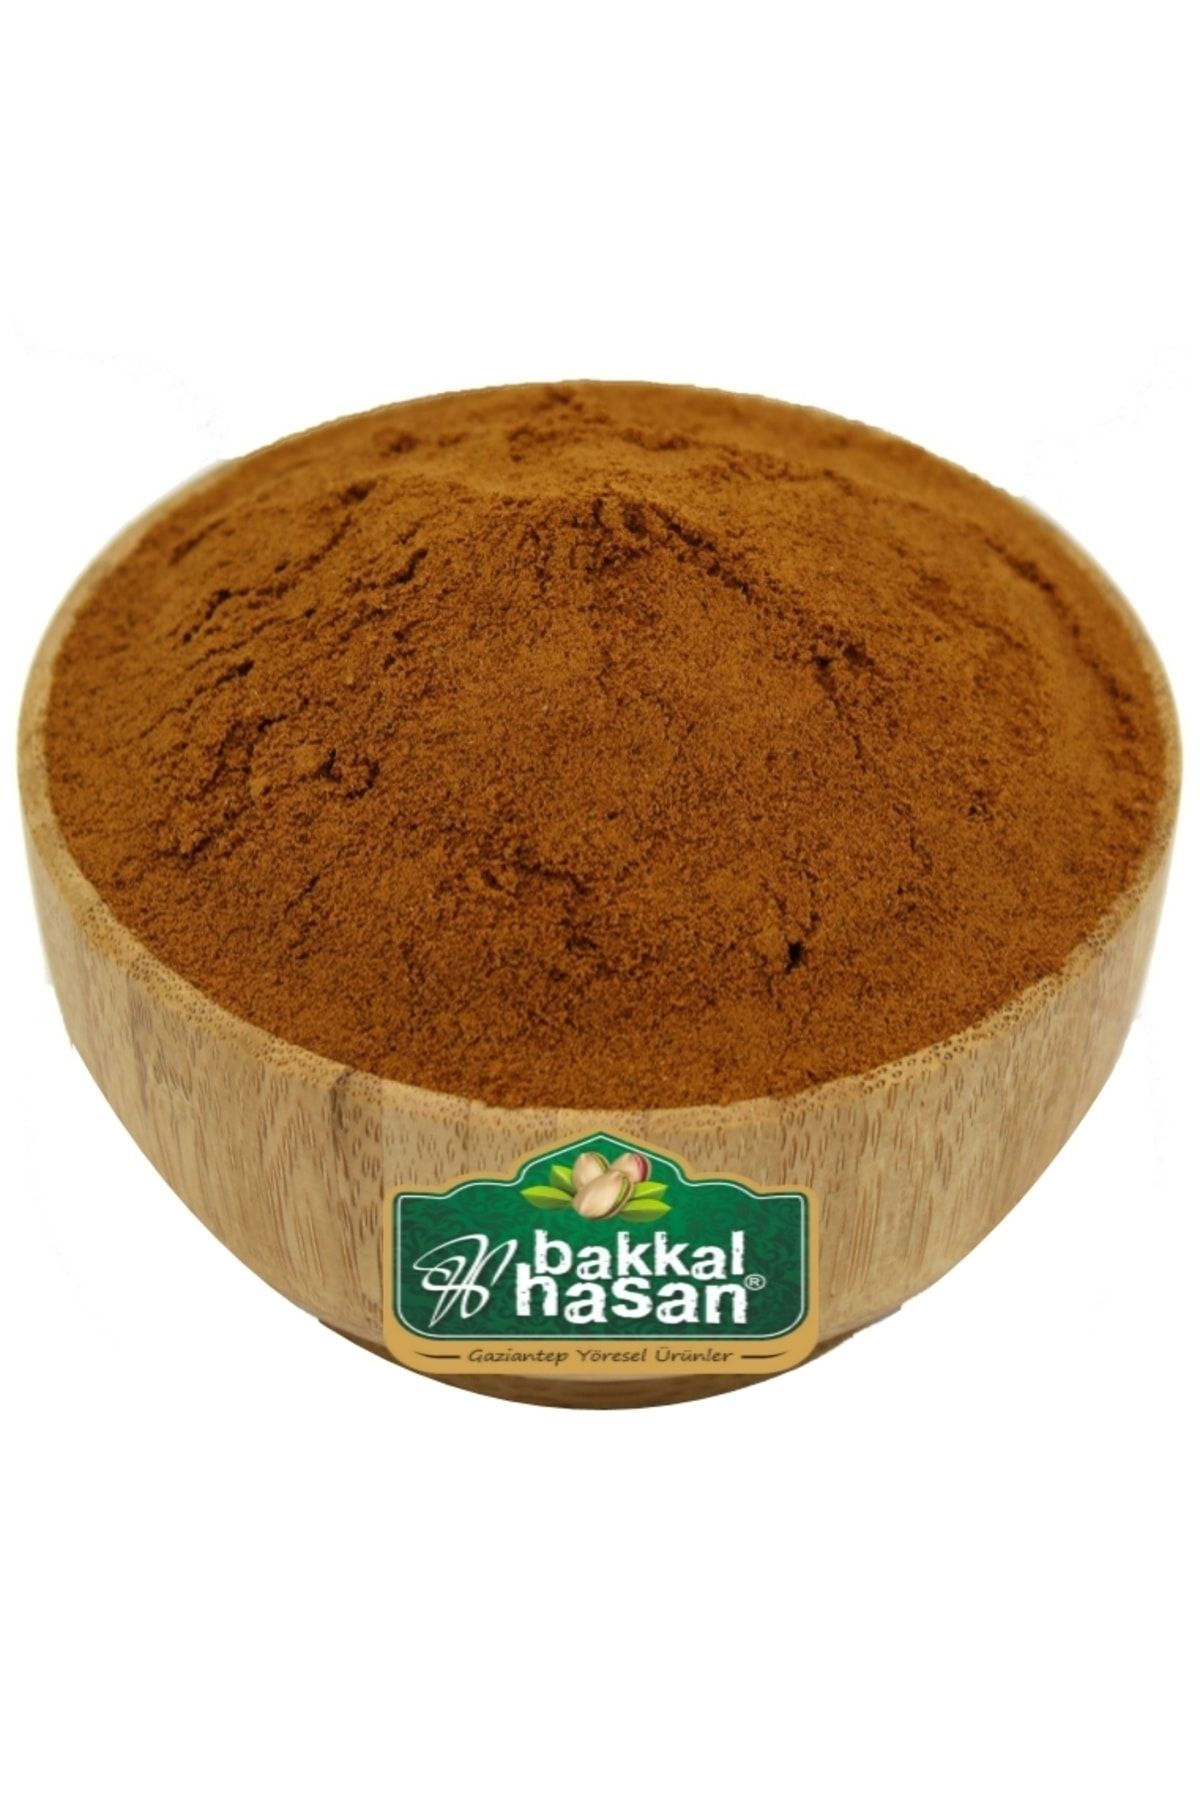 bakkal hasan Damla Sakızlı Toz Kahve 4 kg - Bakkal Hasan